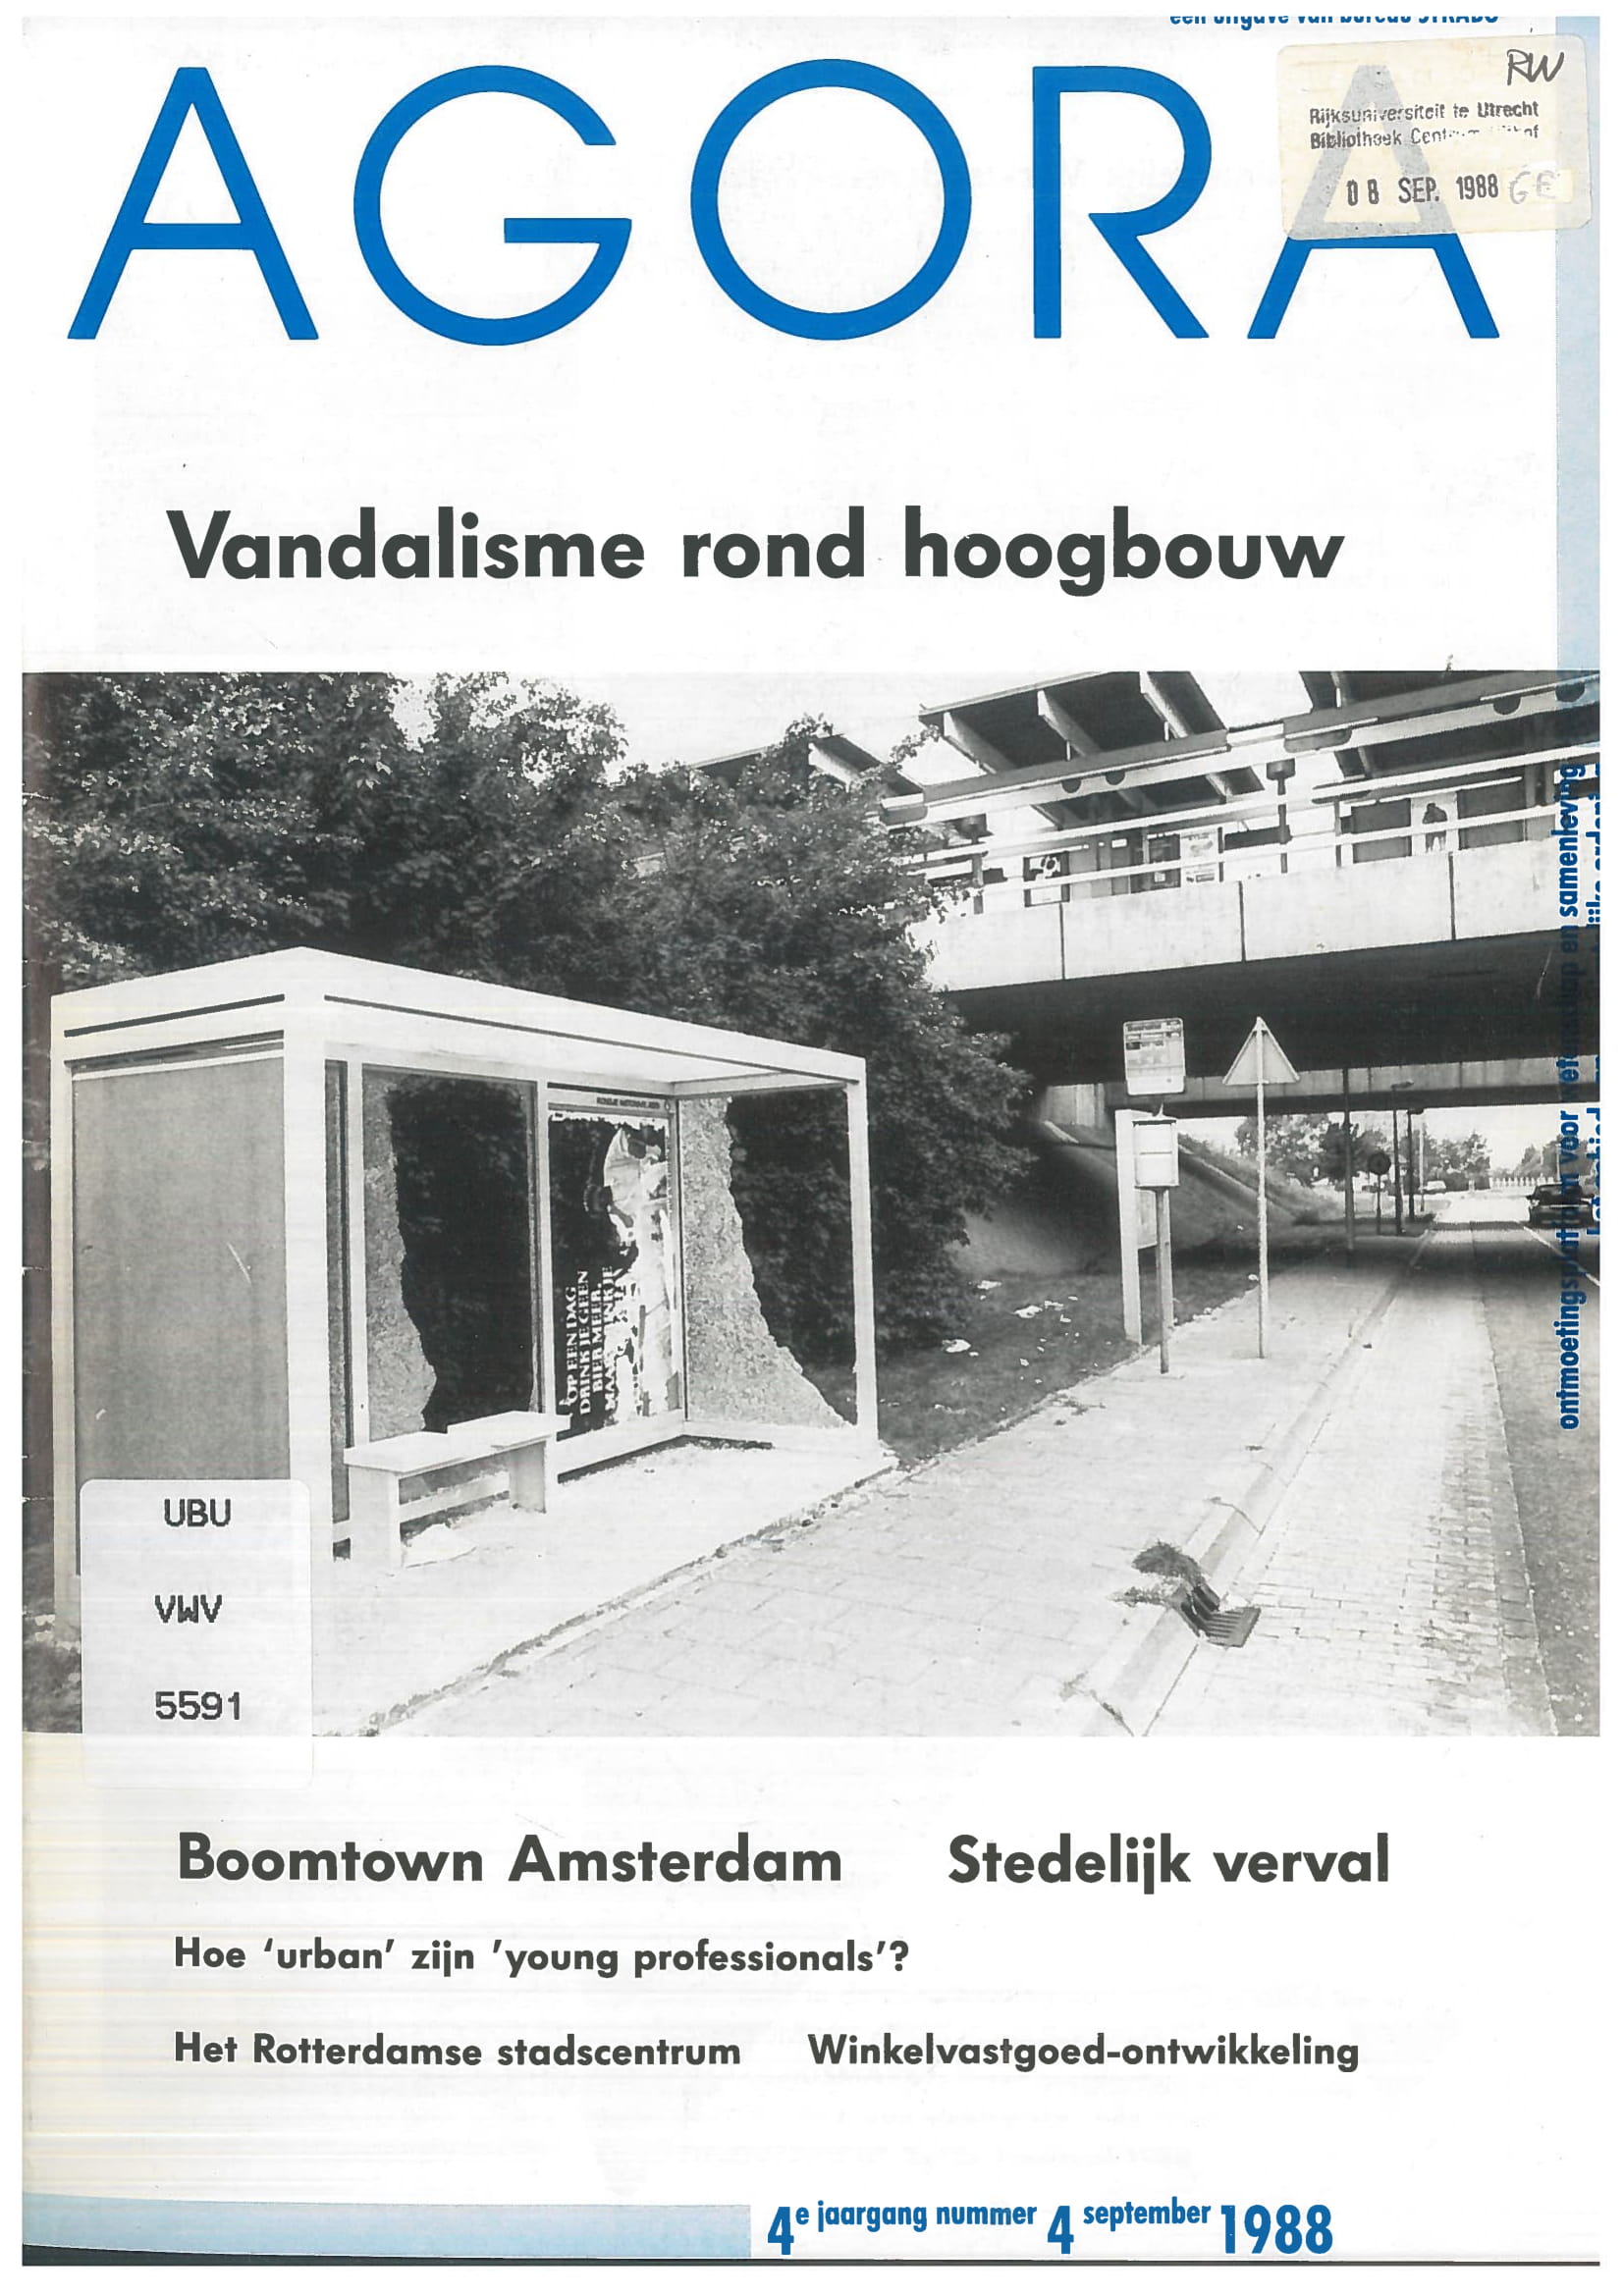 Volume 4 • Issue 4 • 1988 • Aanpak vandalisme rond hoogbouw